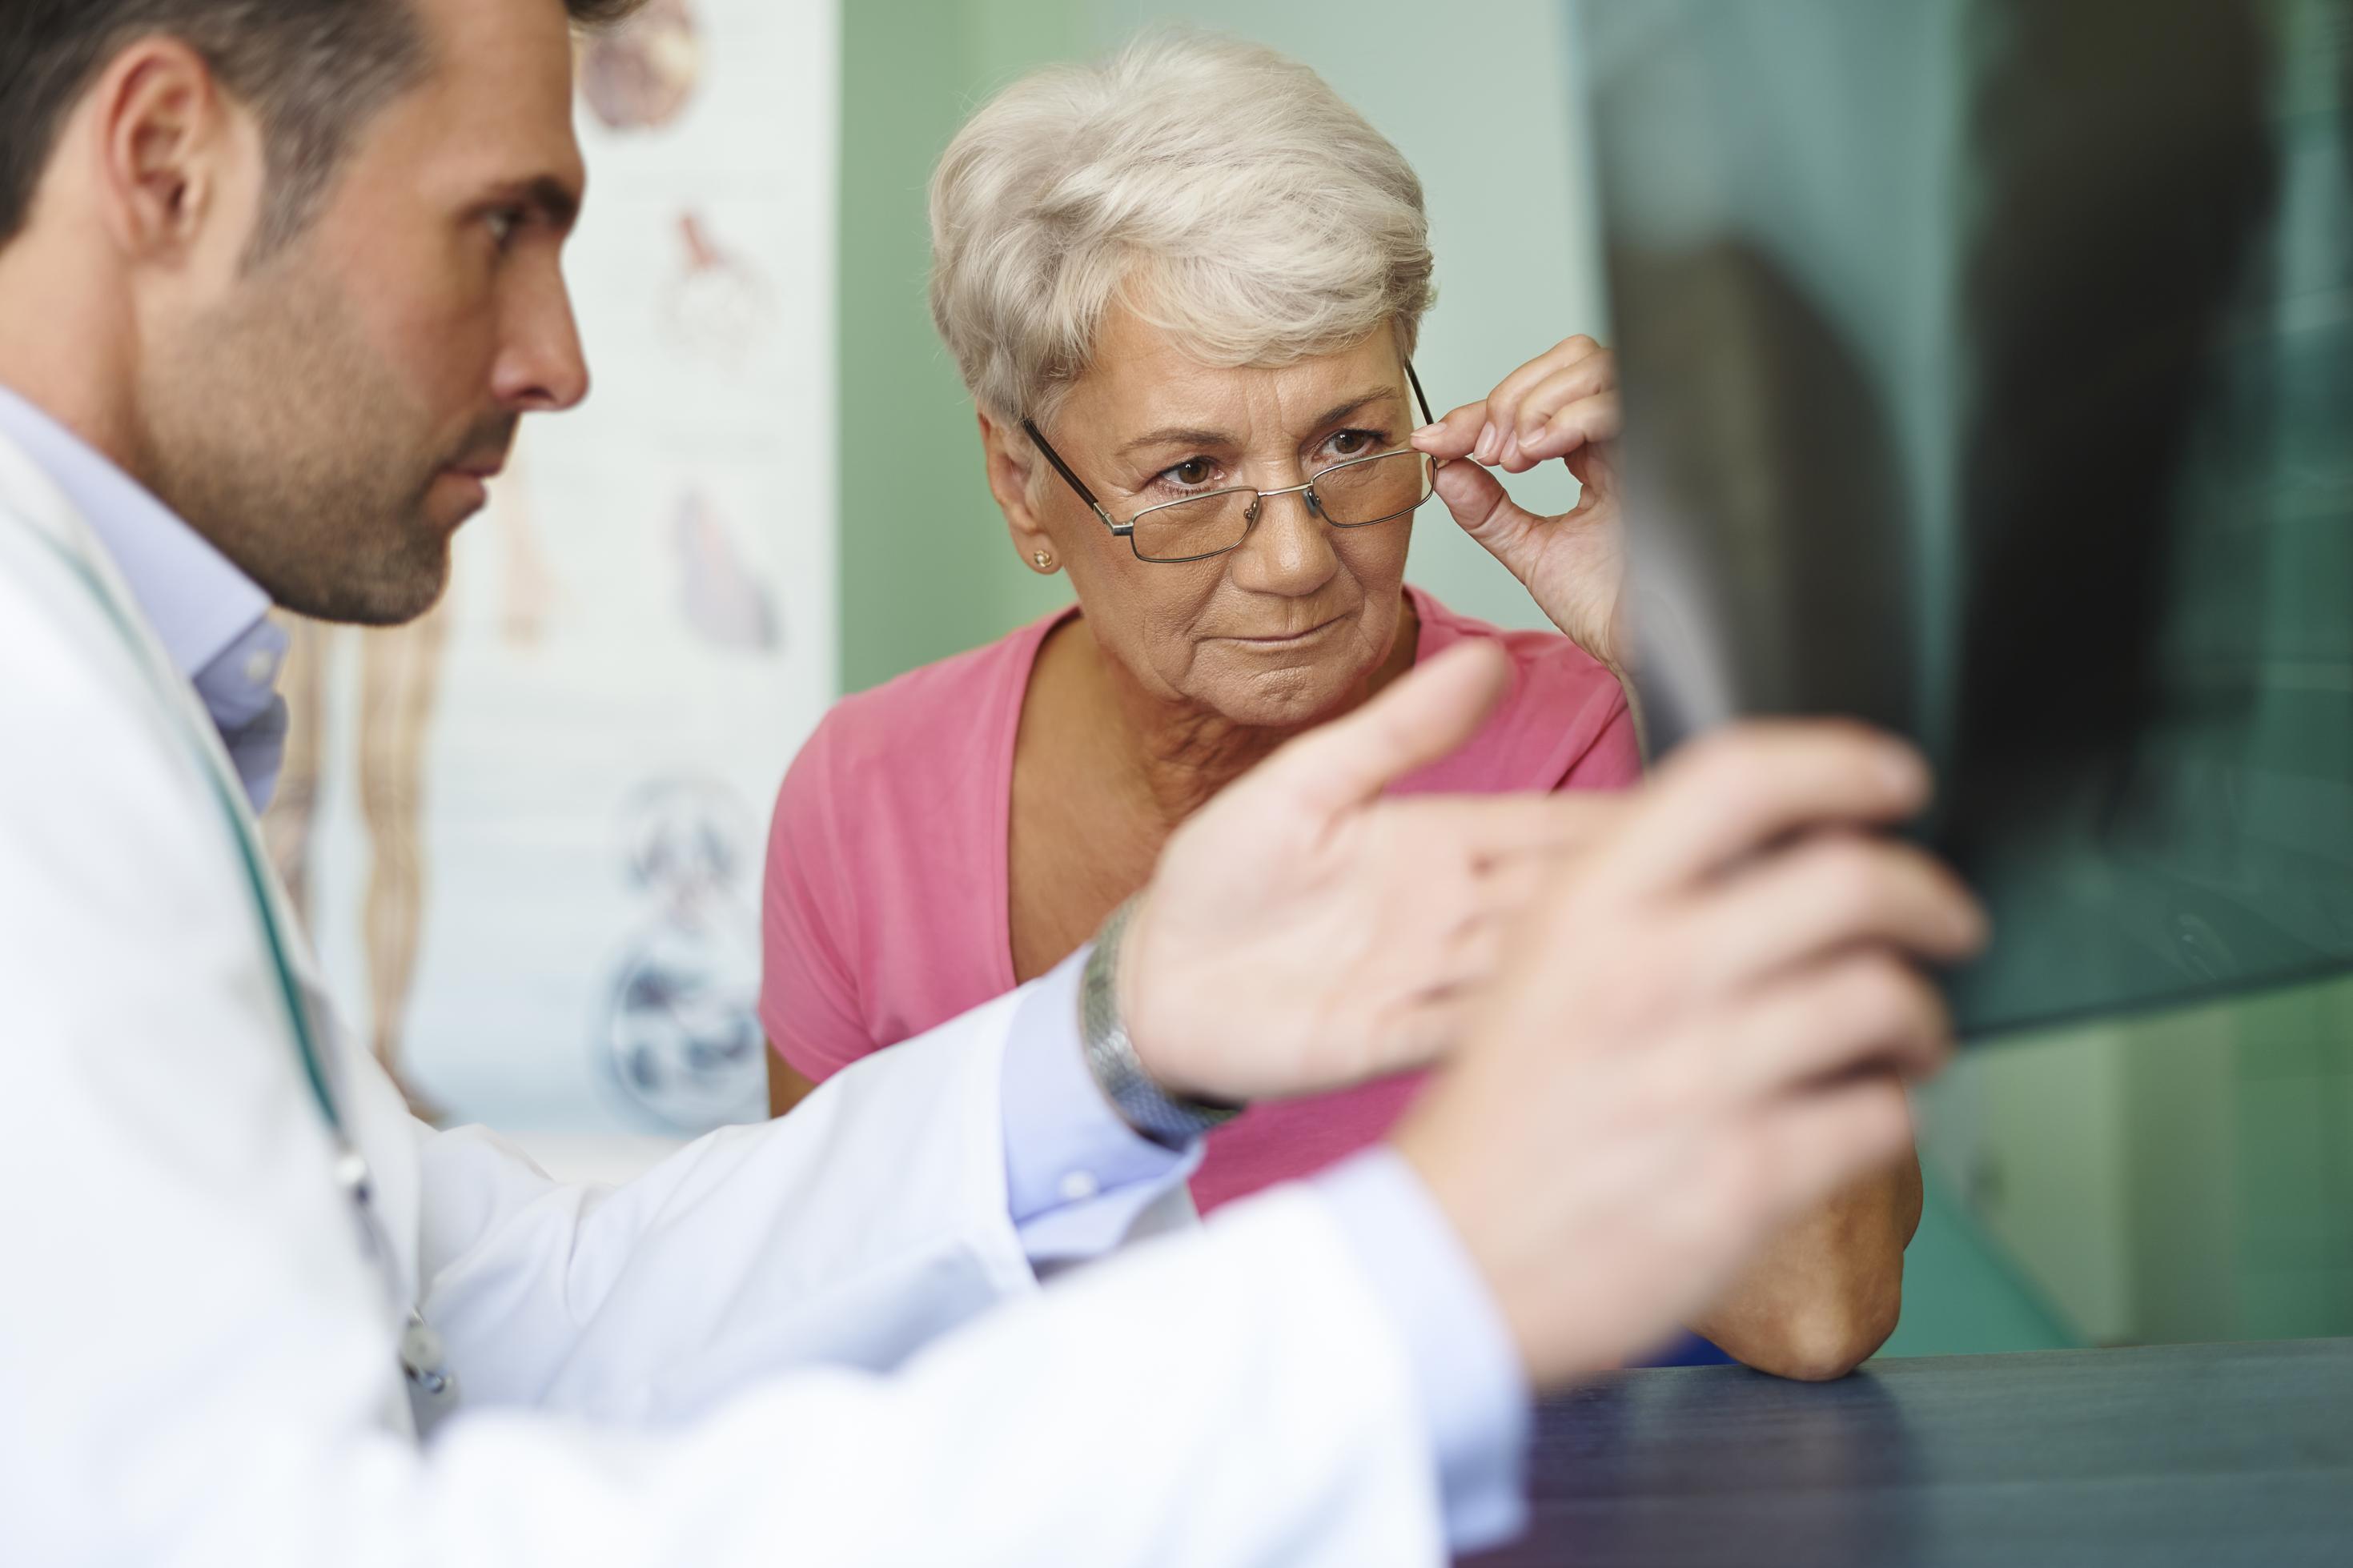 Ein Arzt zeigt einer Patientin ein Röntgenbild, die Patientin schiebt ihre Brille herunter, um besser sehen und verstehen zu können, was der Arzt erklärt